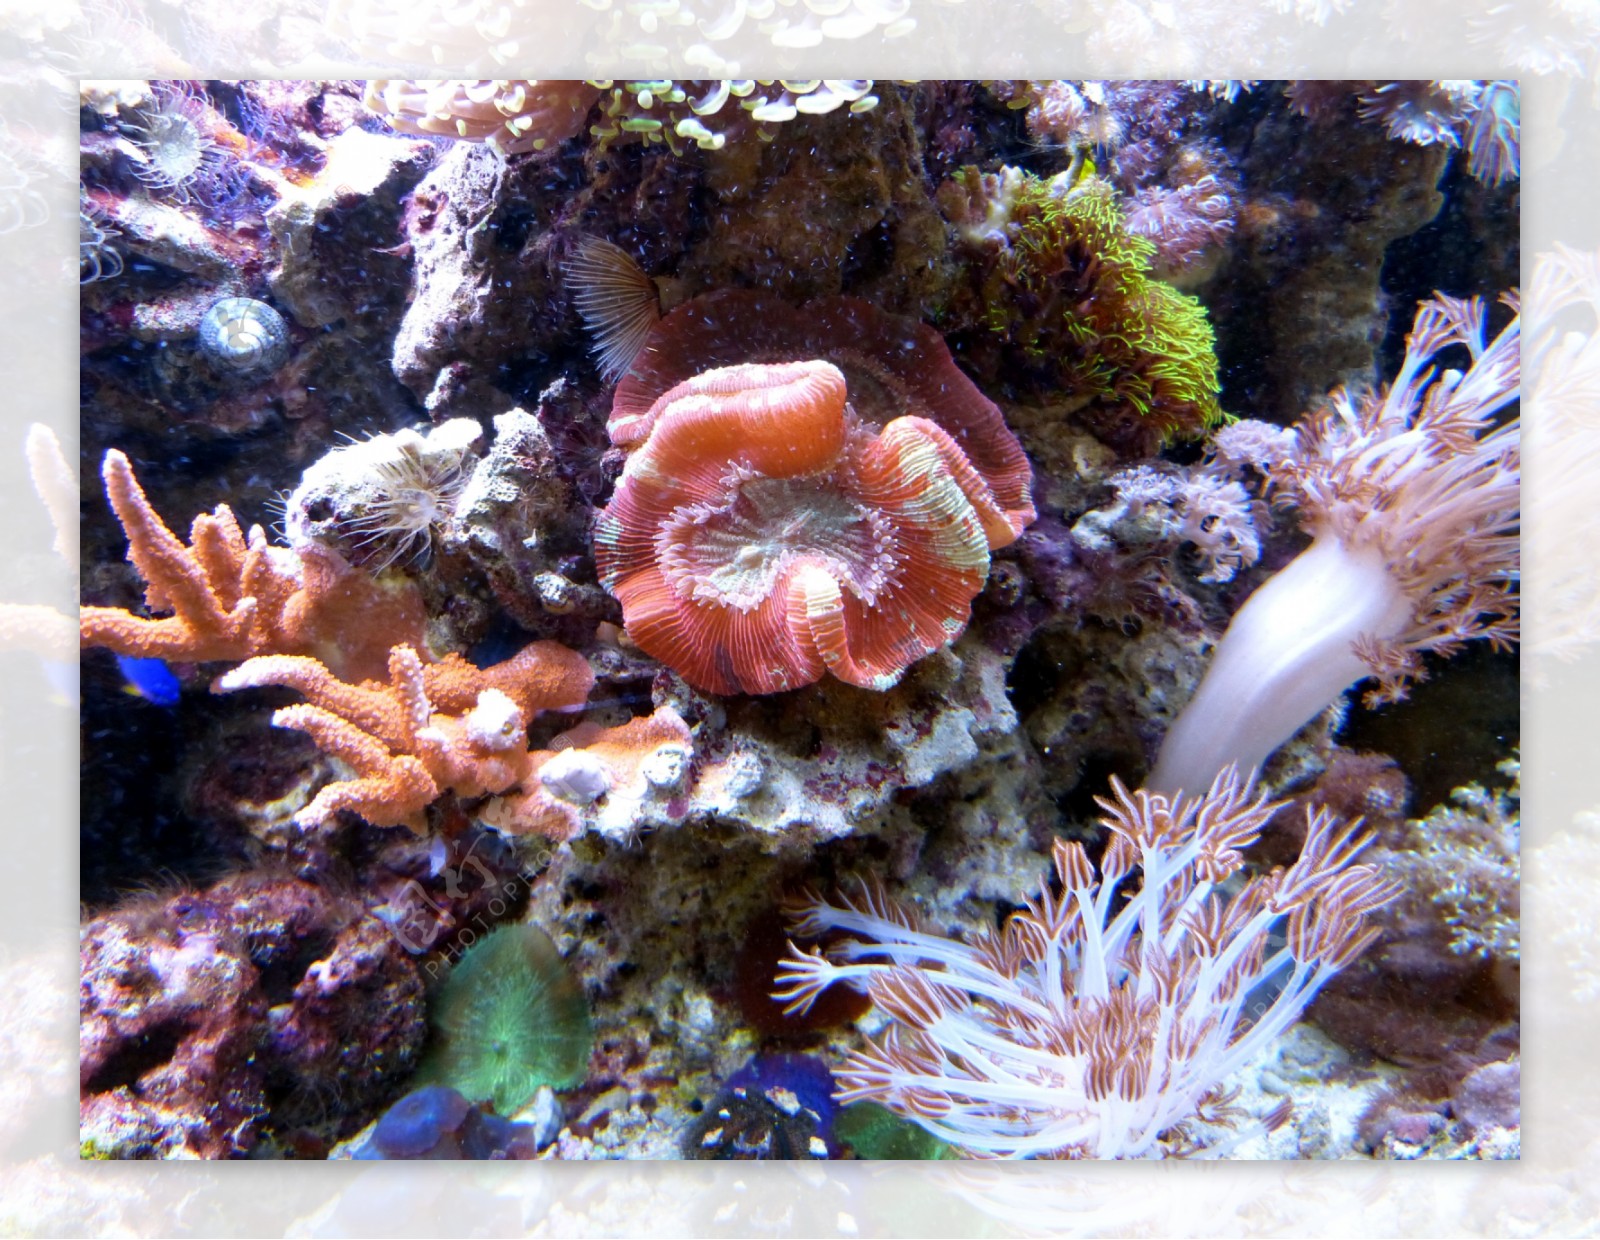 美丽多姿的海底珊瑚